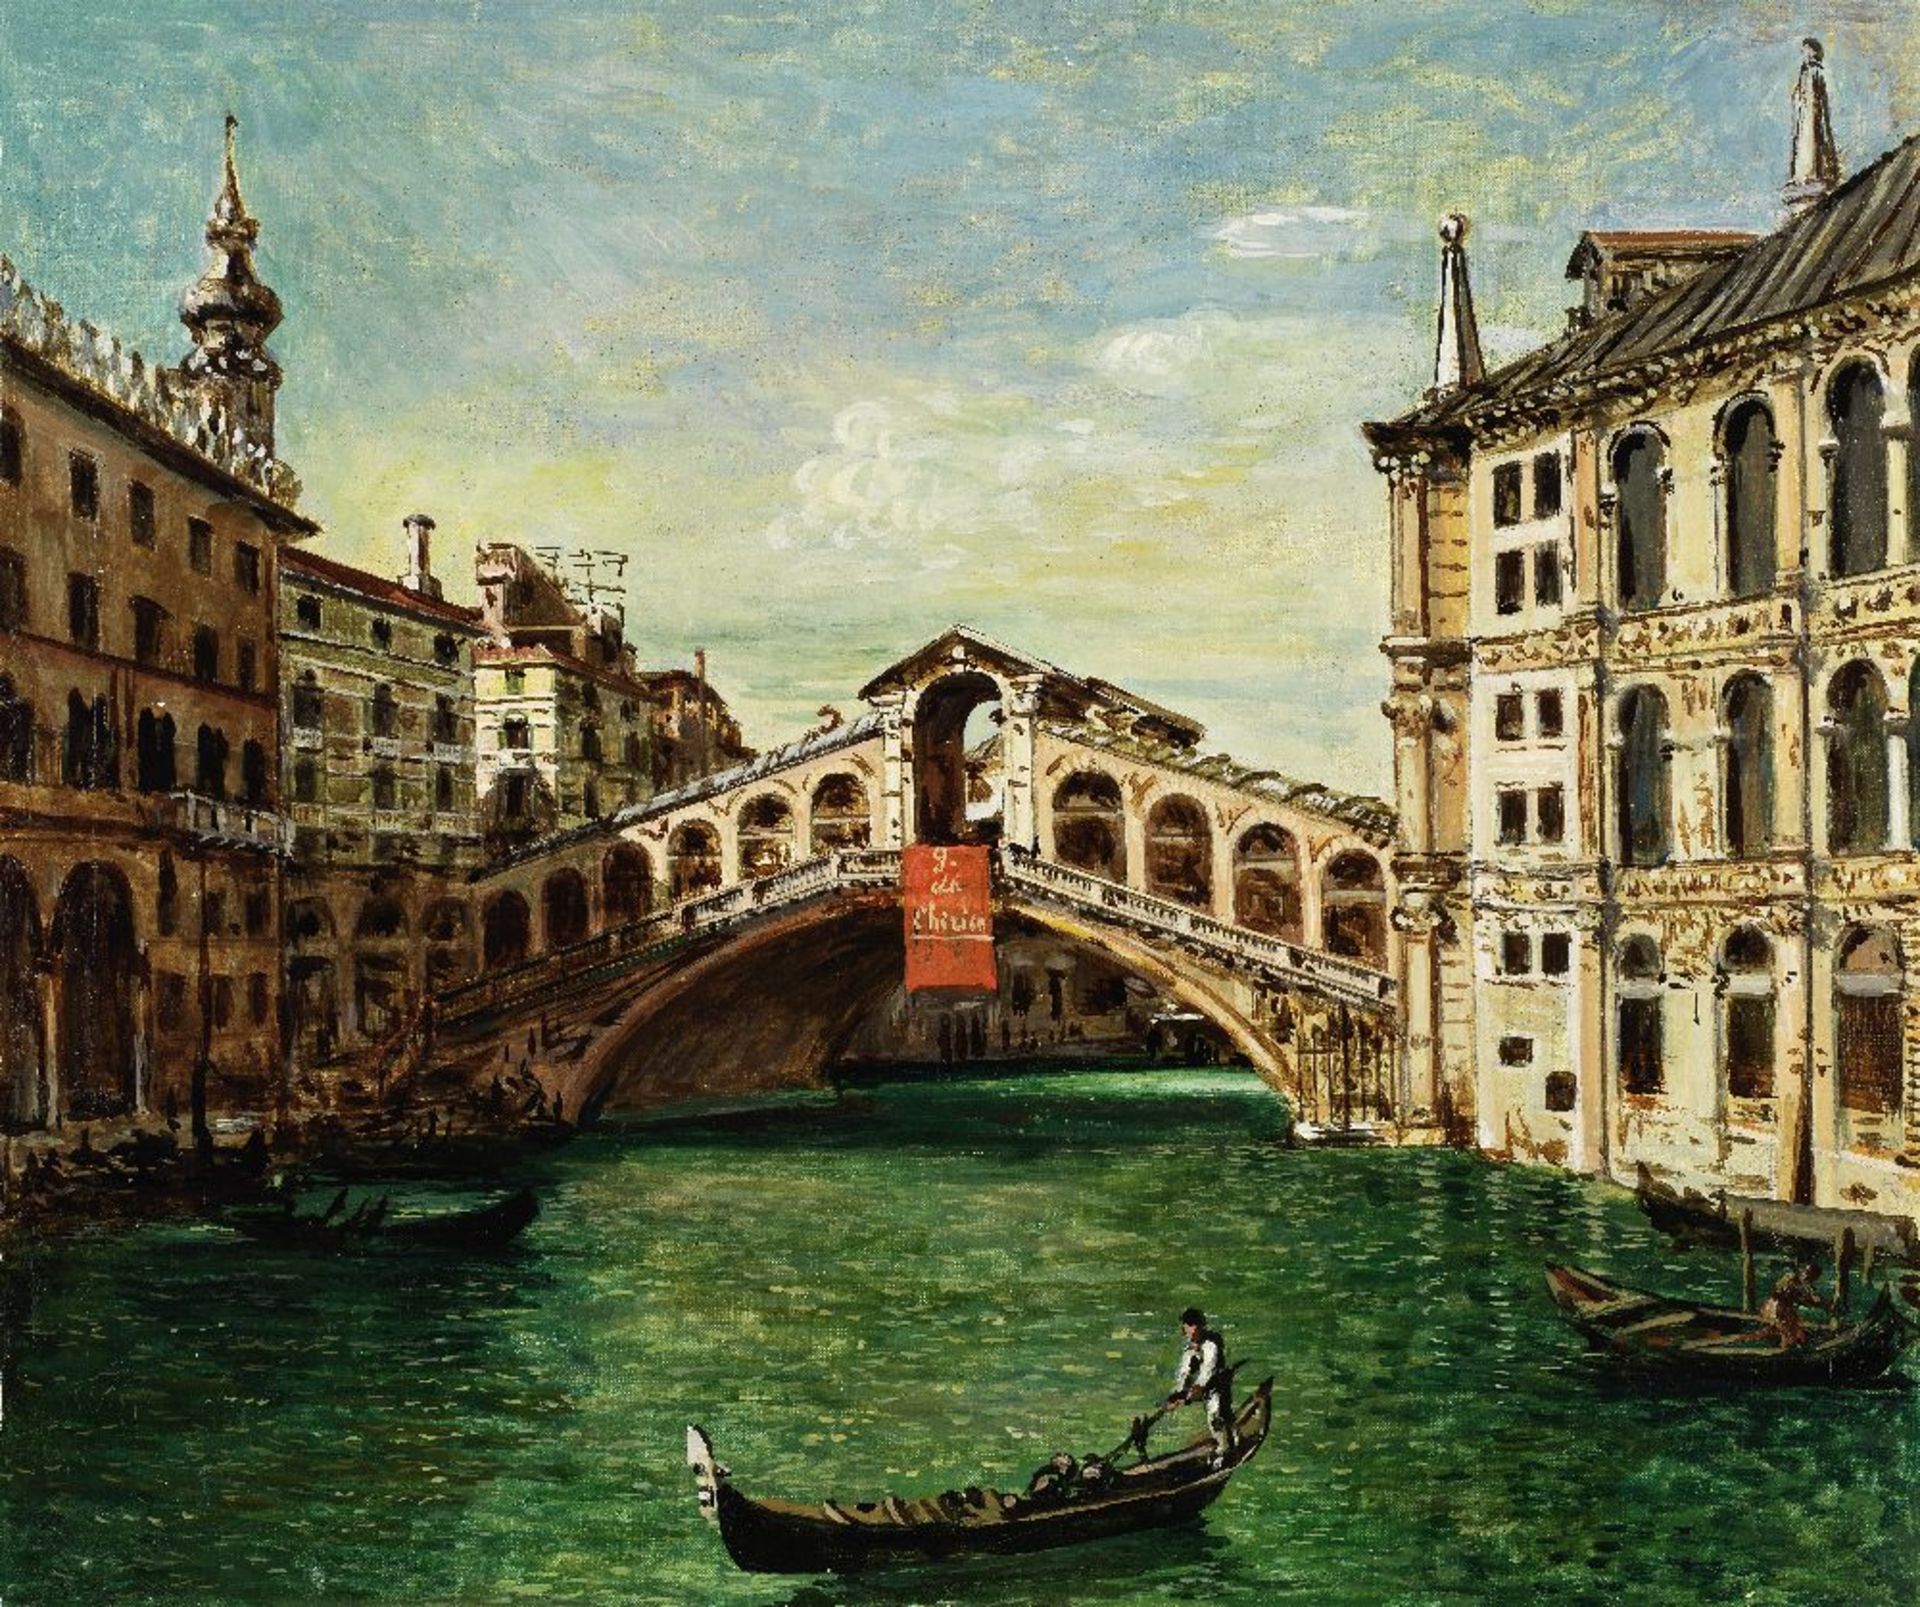 GIORGIO DE CHIRICO (1888-1978) Ponte di Rialto (Painted in 1956)